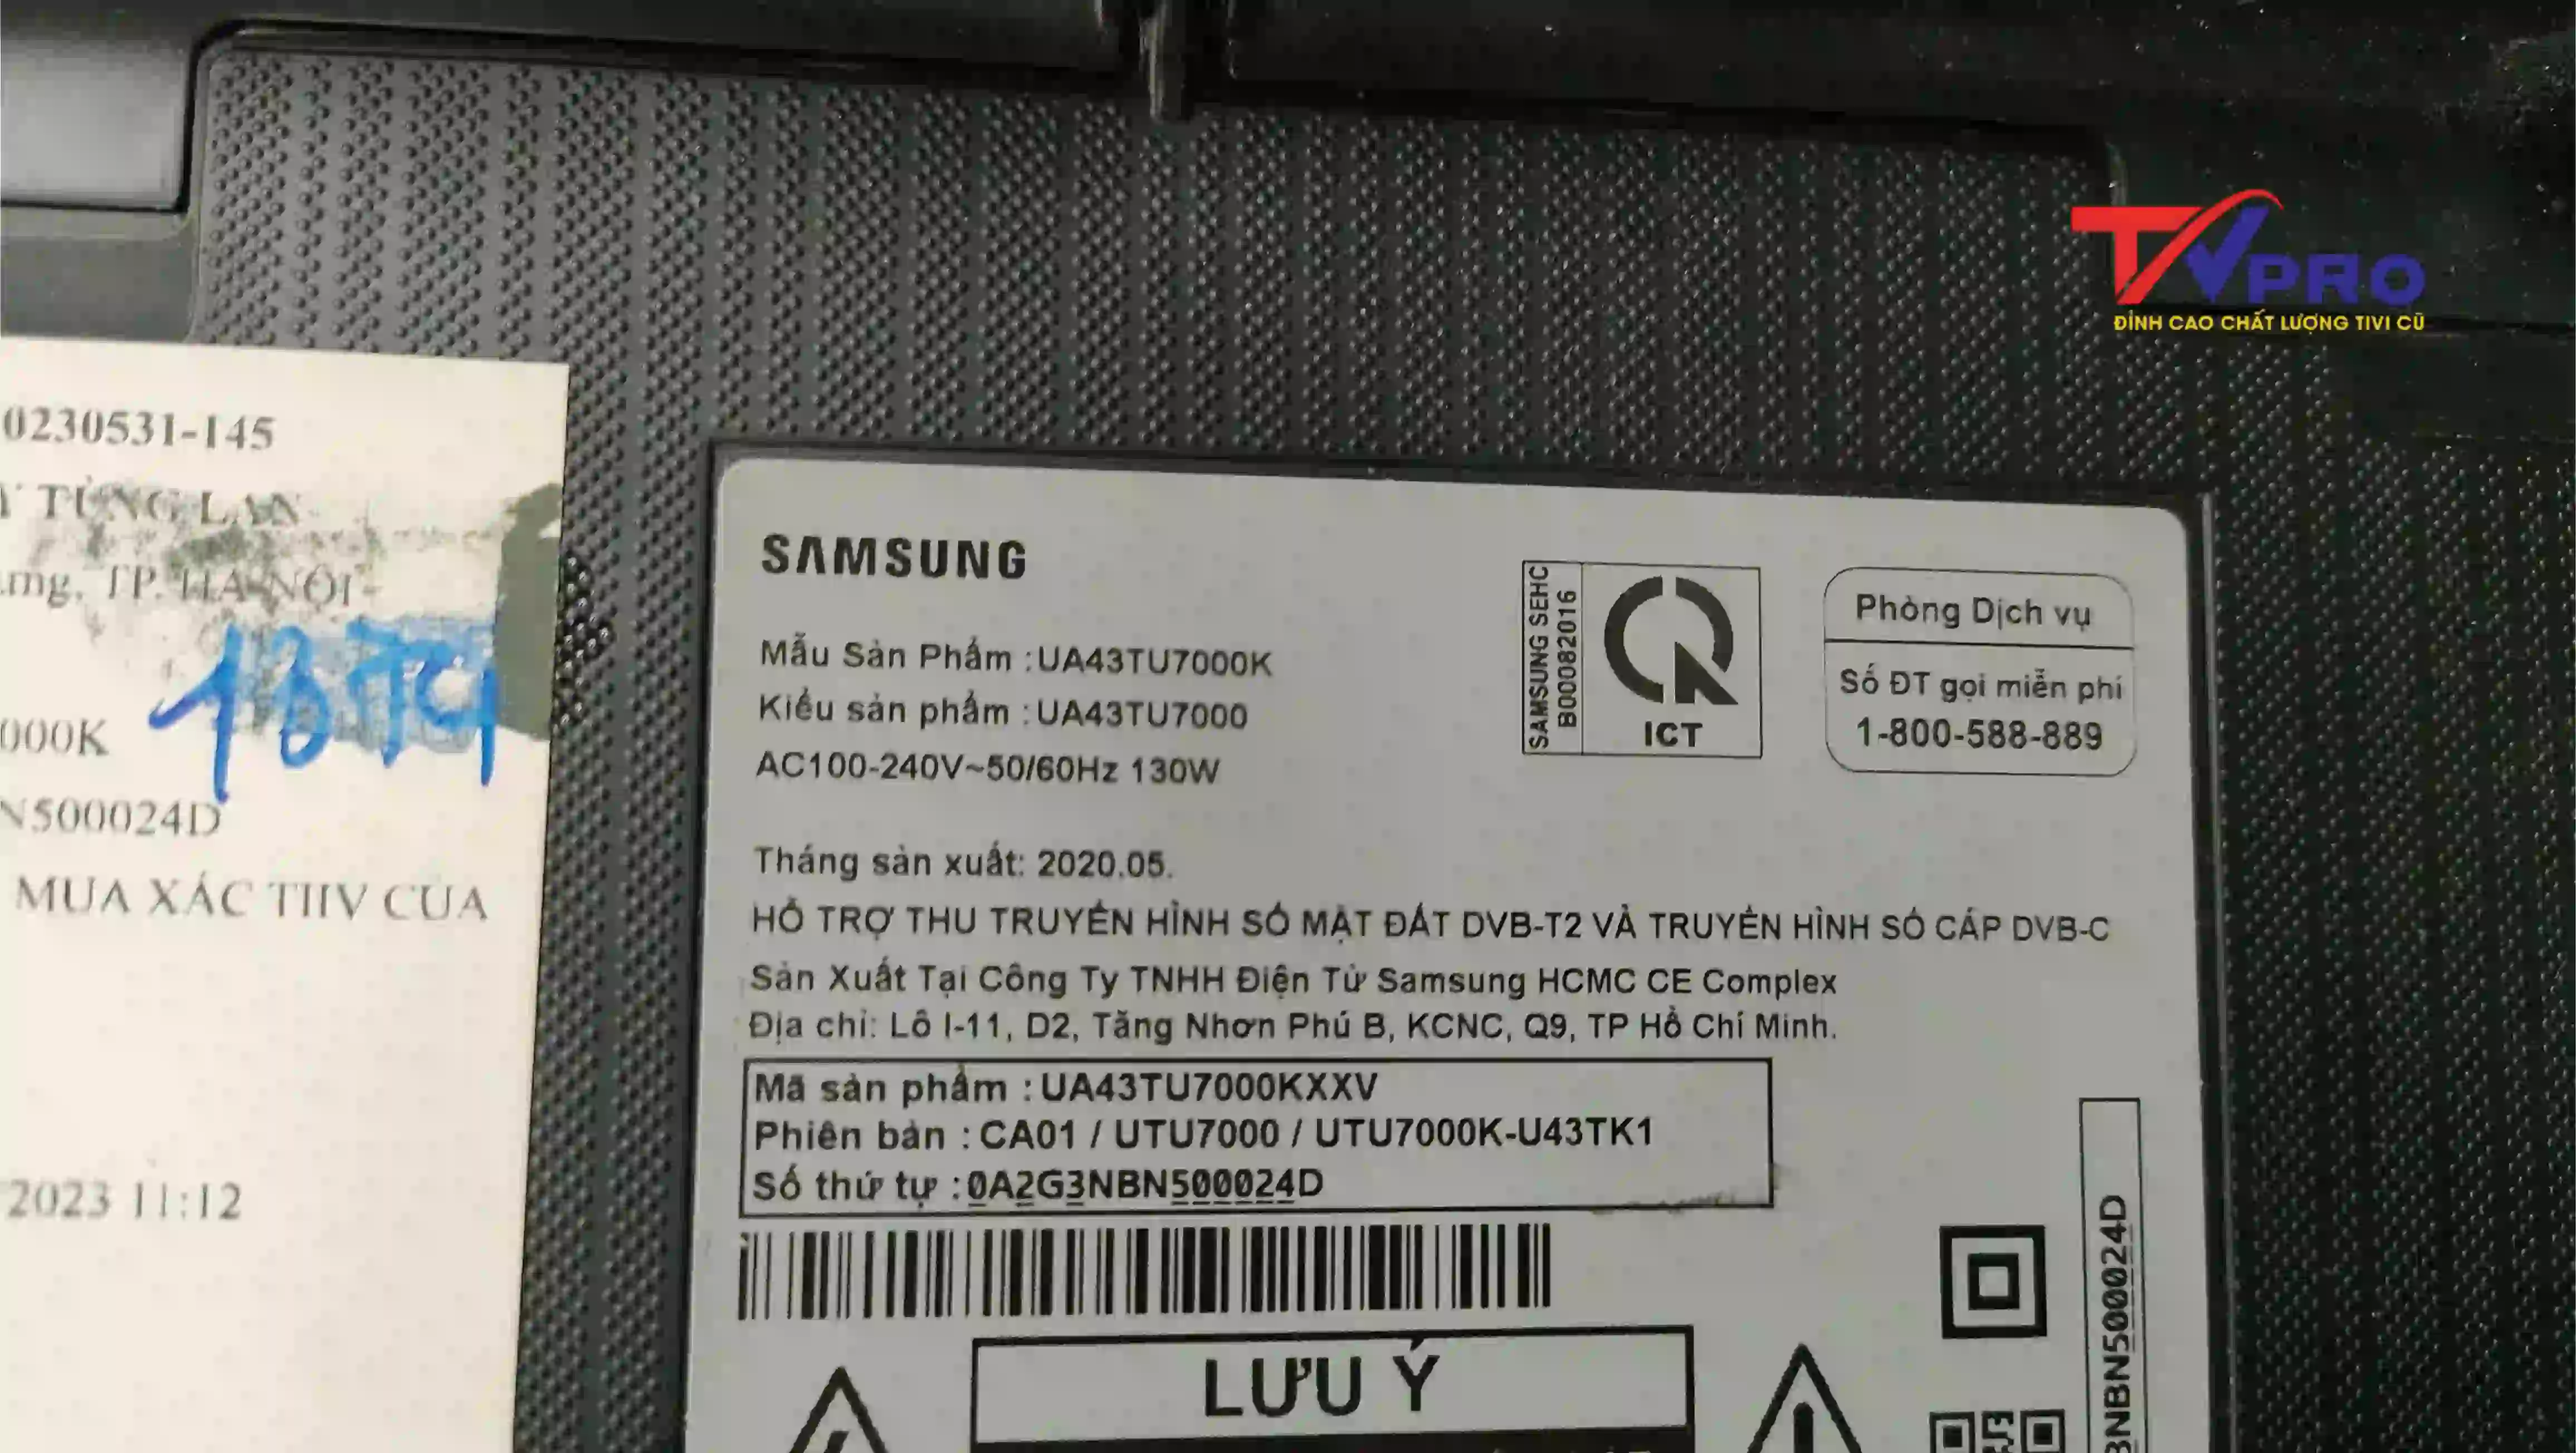 Thông số kỹ thuật của tivi Samsung 43TU7000